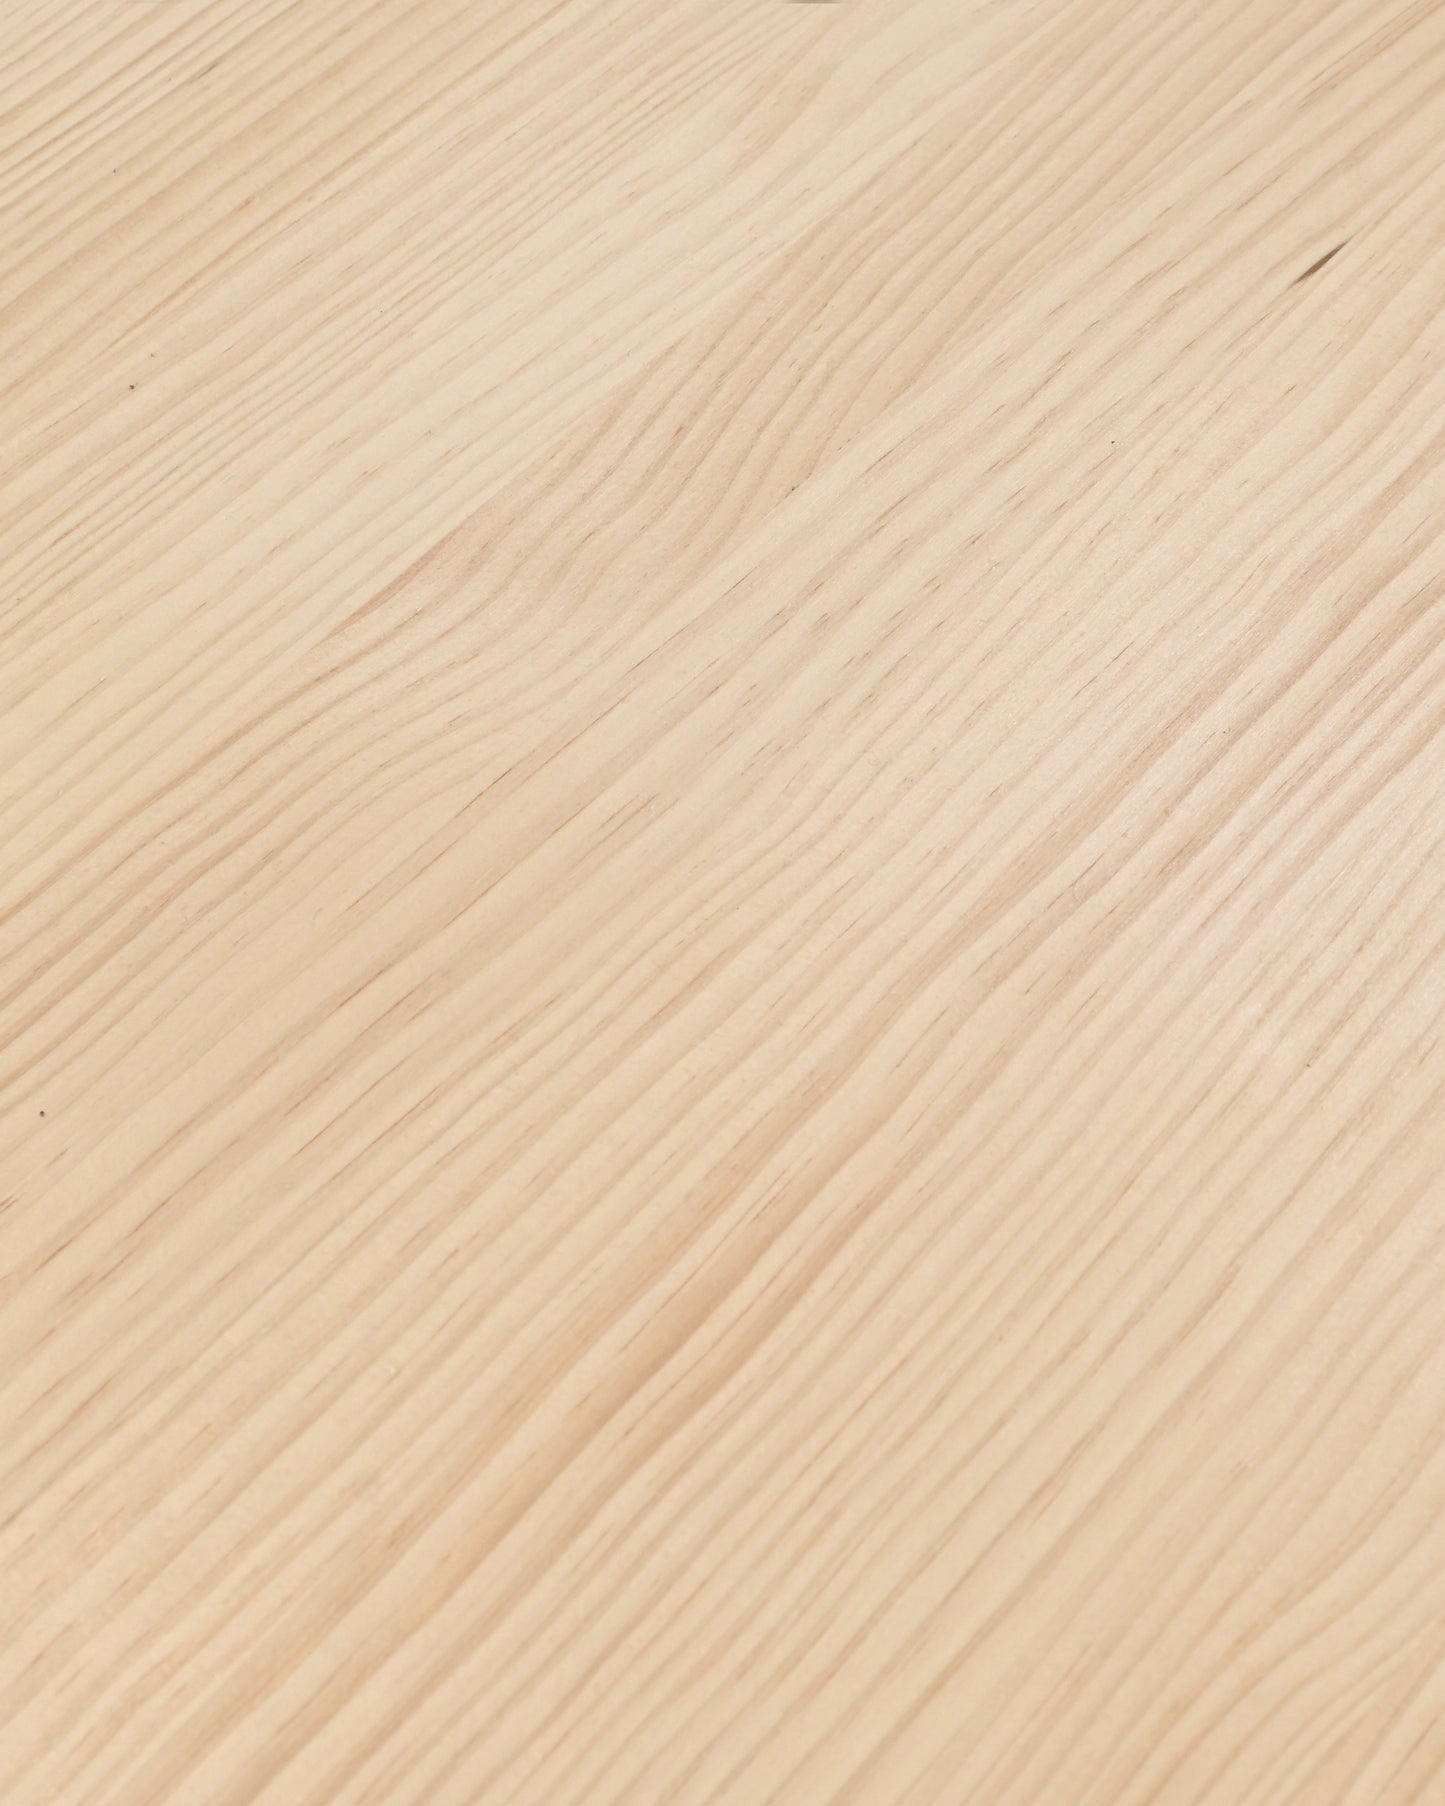 Mesa de comedor de madera maciza natural patas negras 200x80cm - DECOWOOD